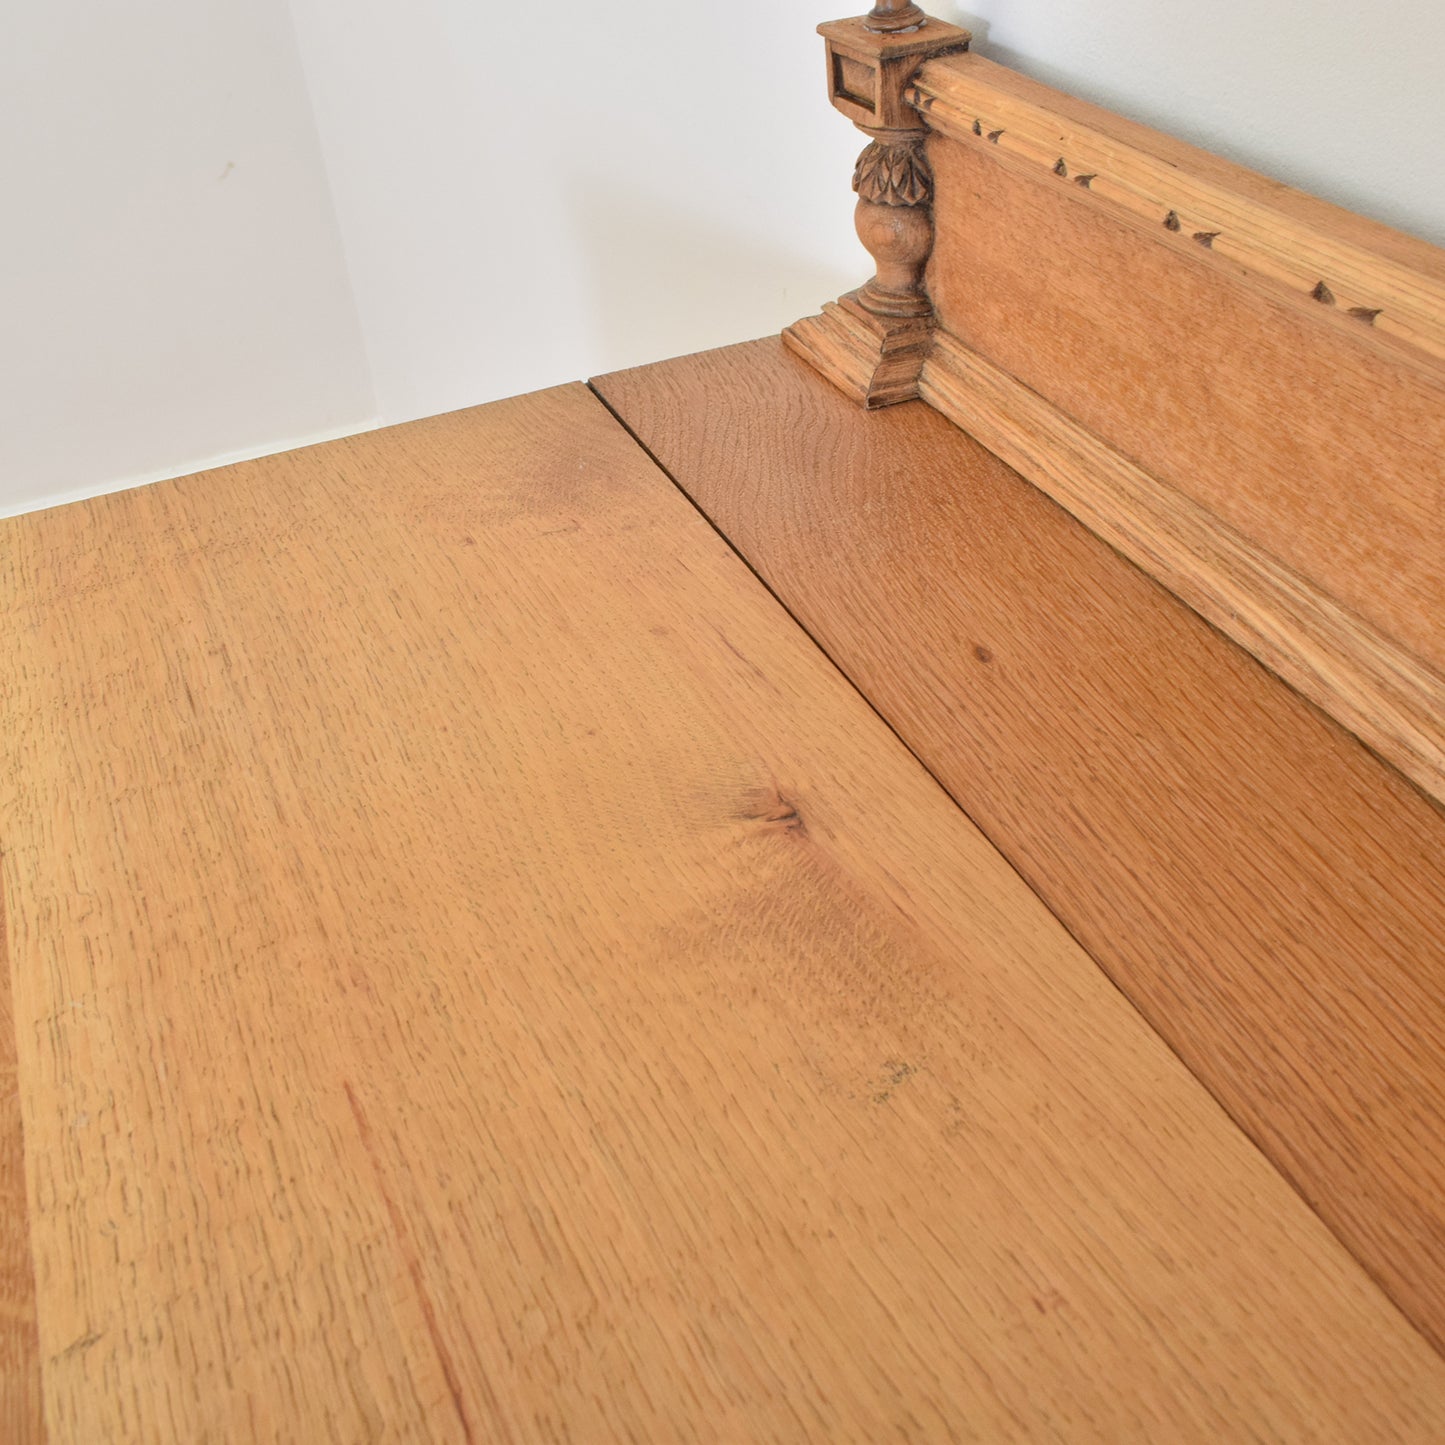 Carved Oak Sideboard